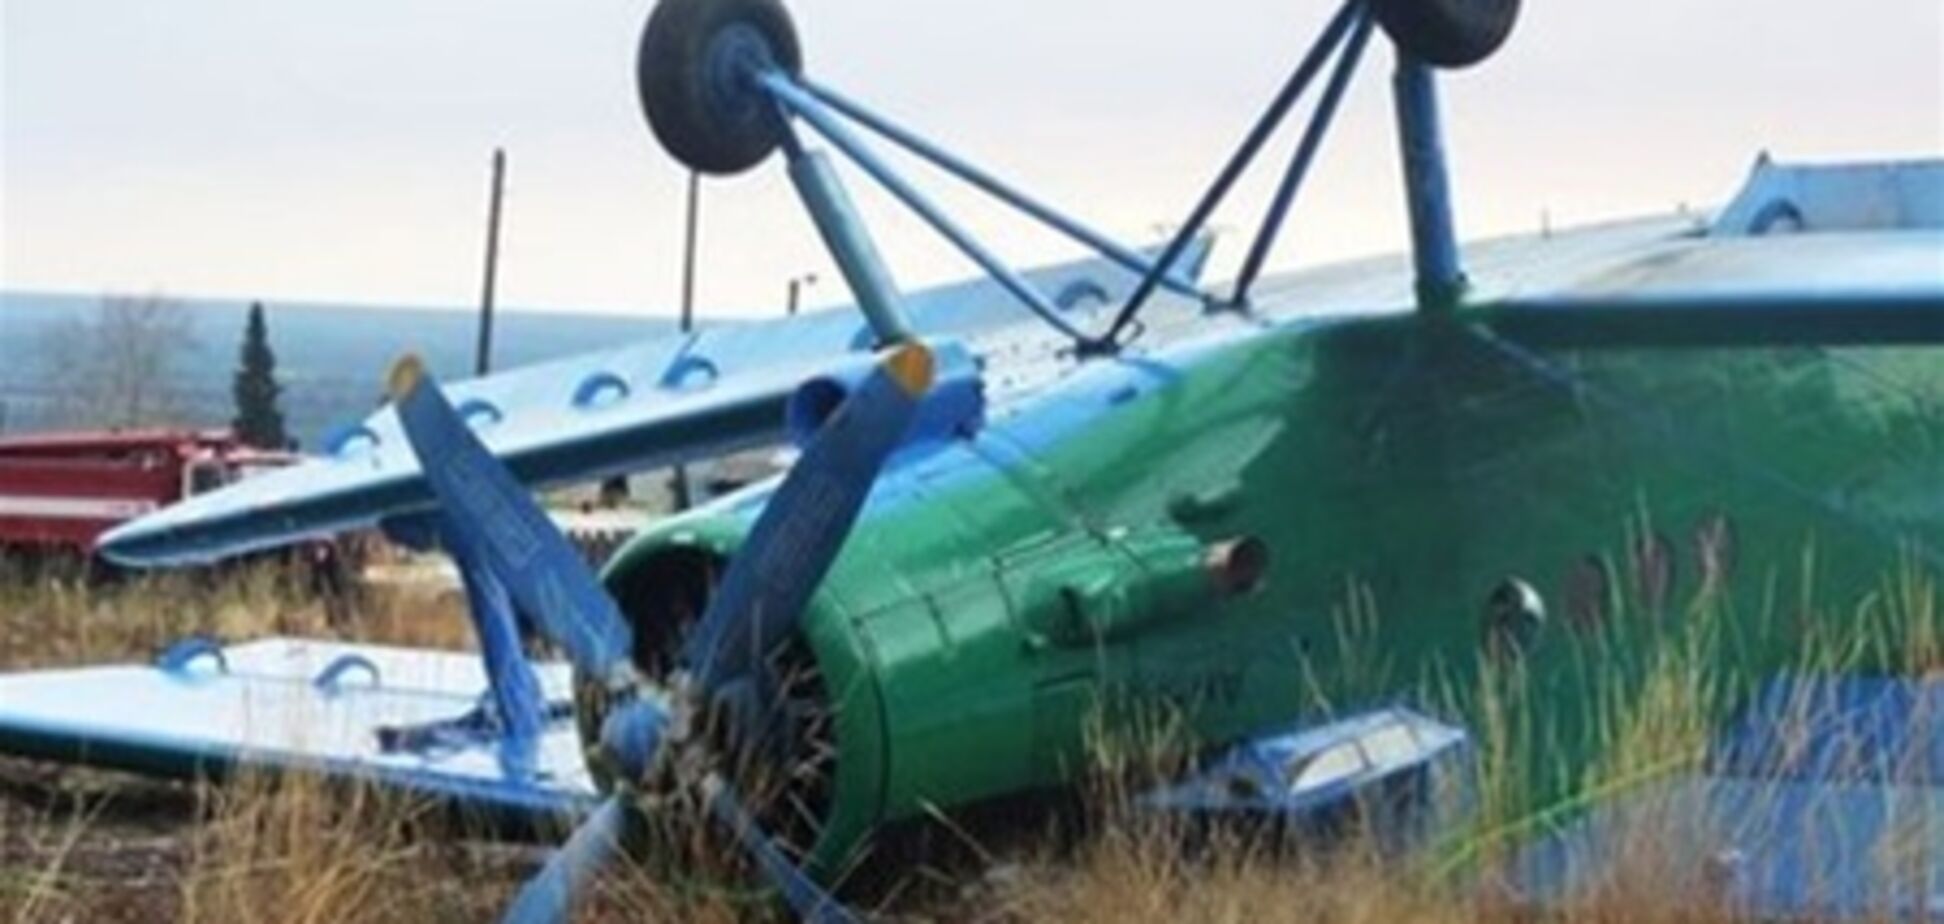 Особи загиблих в авіакатастрофі на Уралі стануть відомі через два тижні